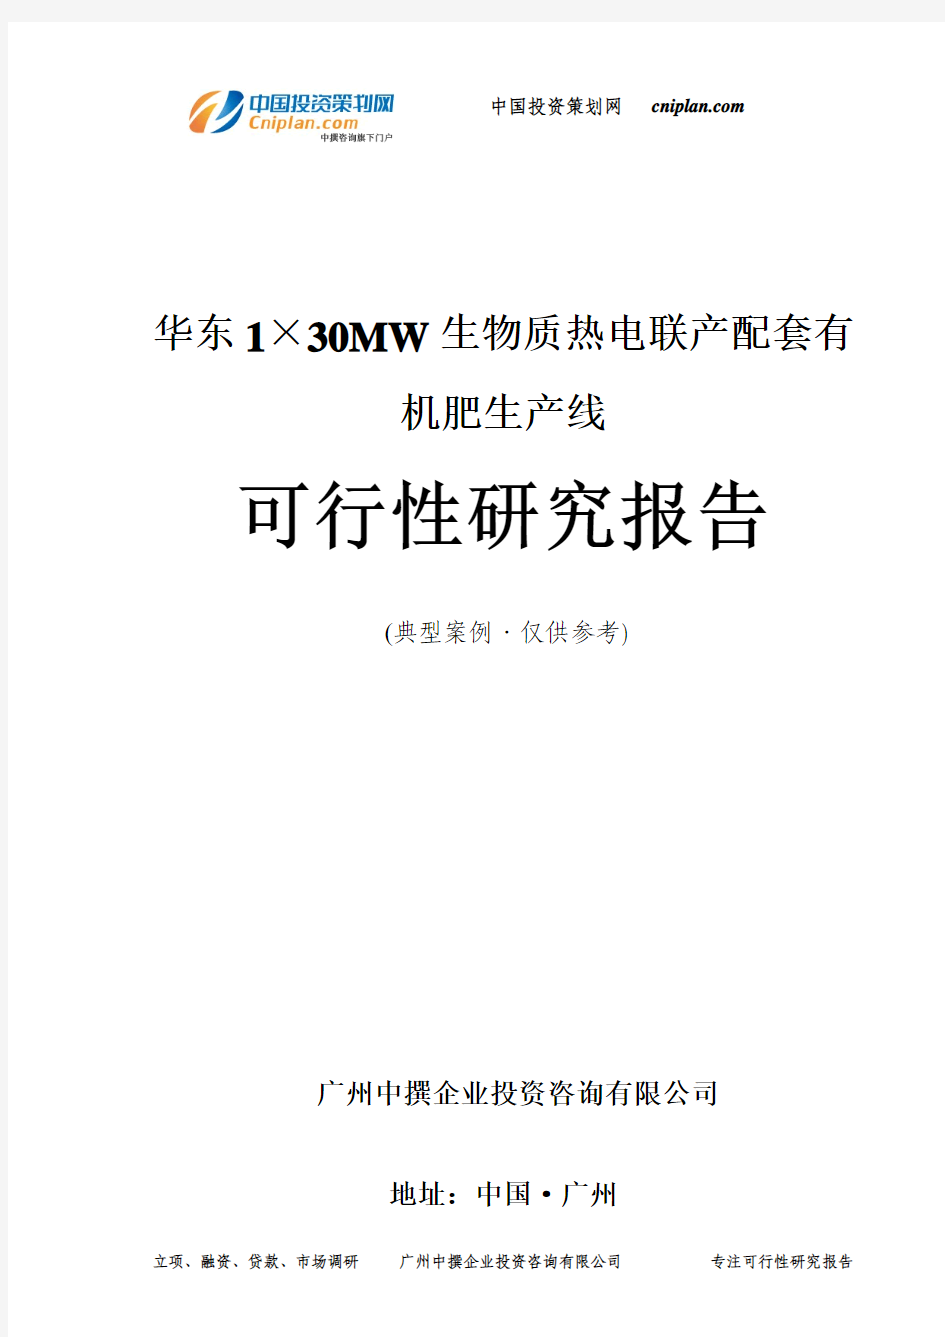 华东1×30MW生物质热电联产配套有机肥生产线可行性研究报告-广州中撰咨询